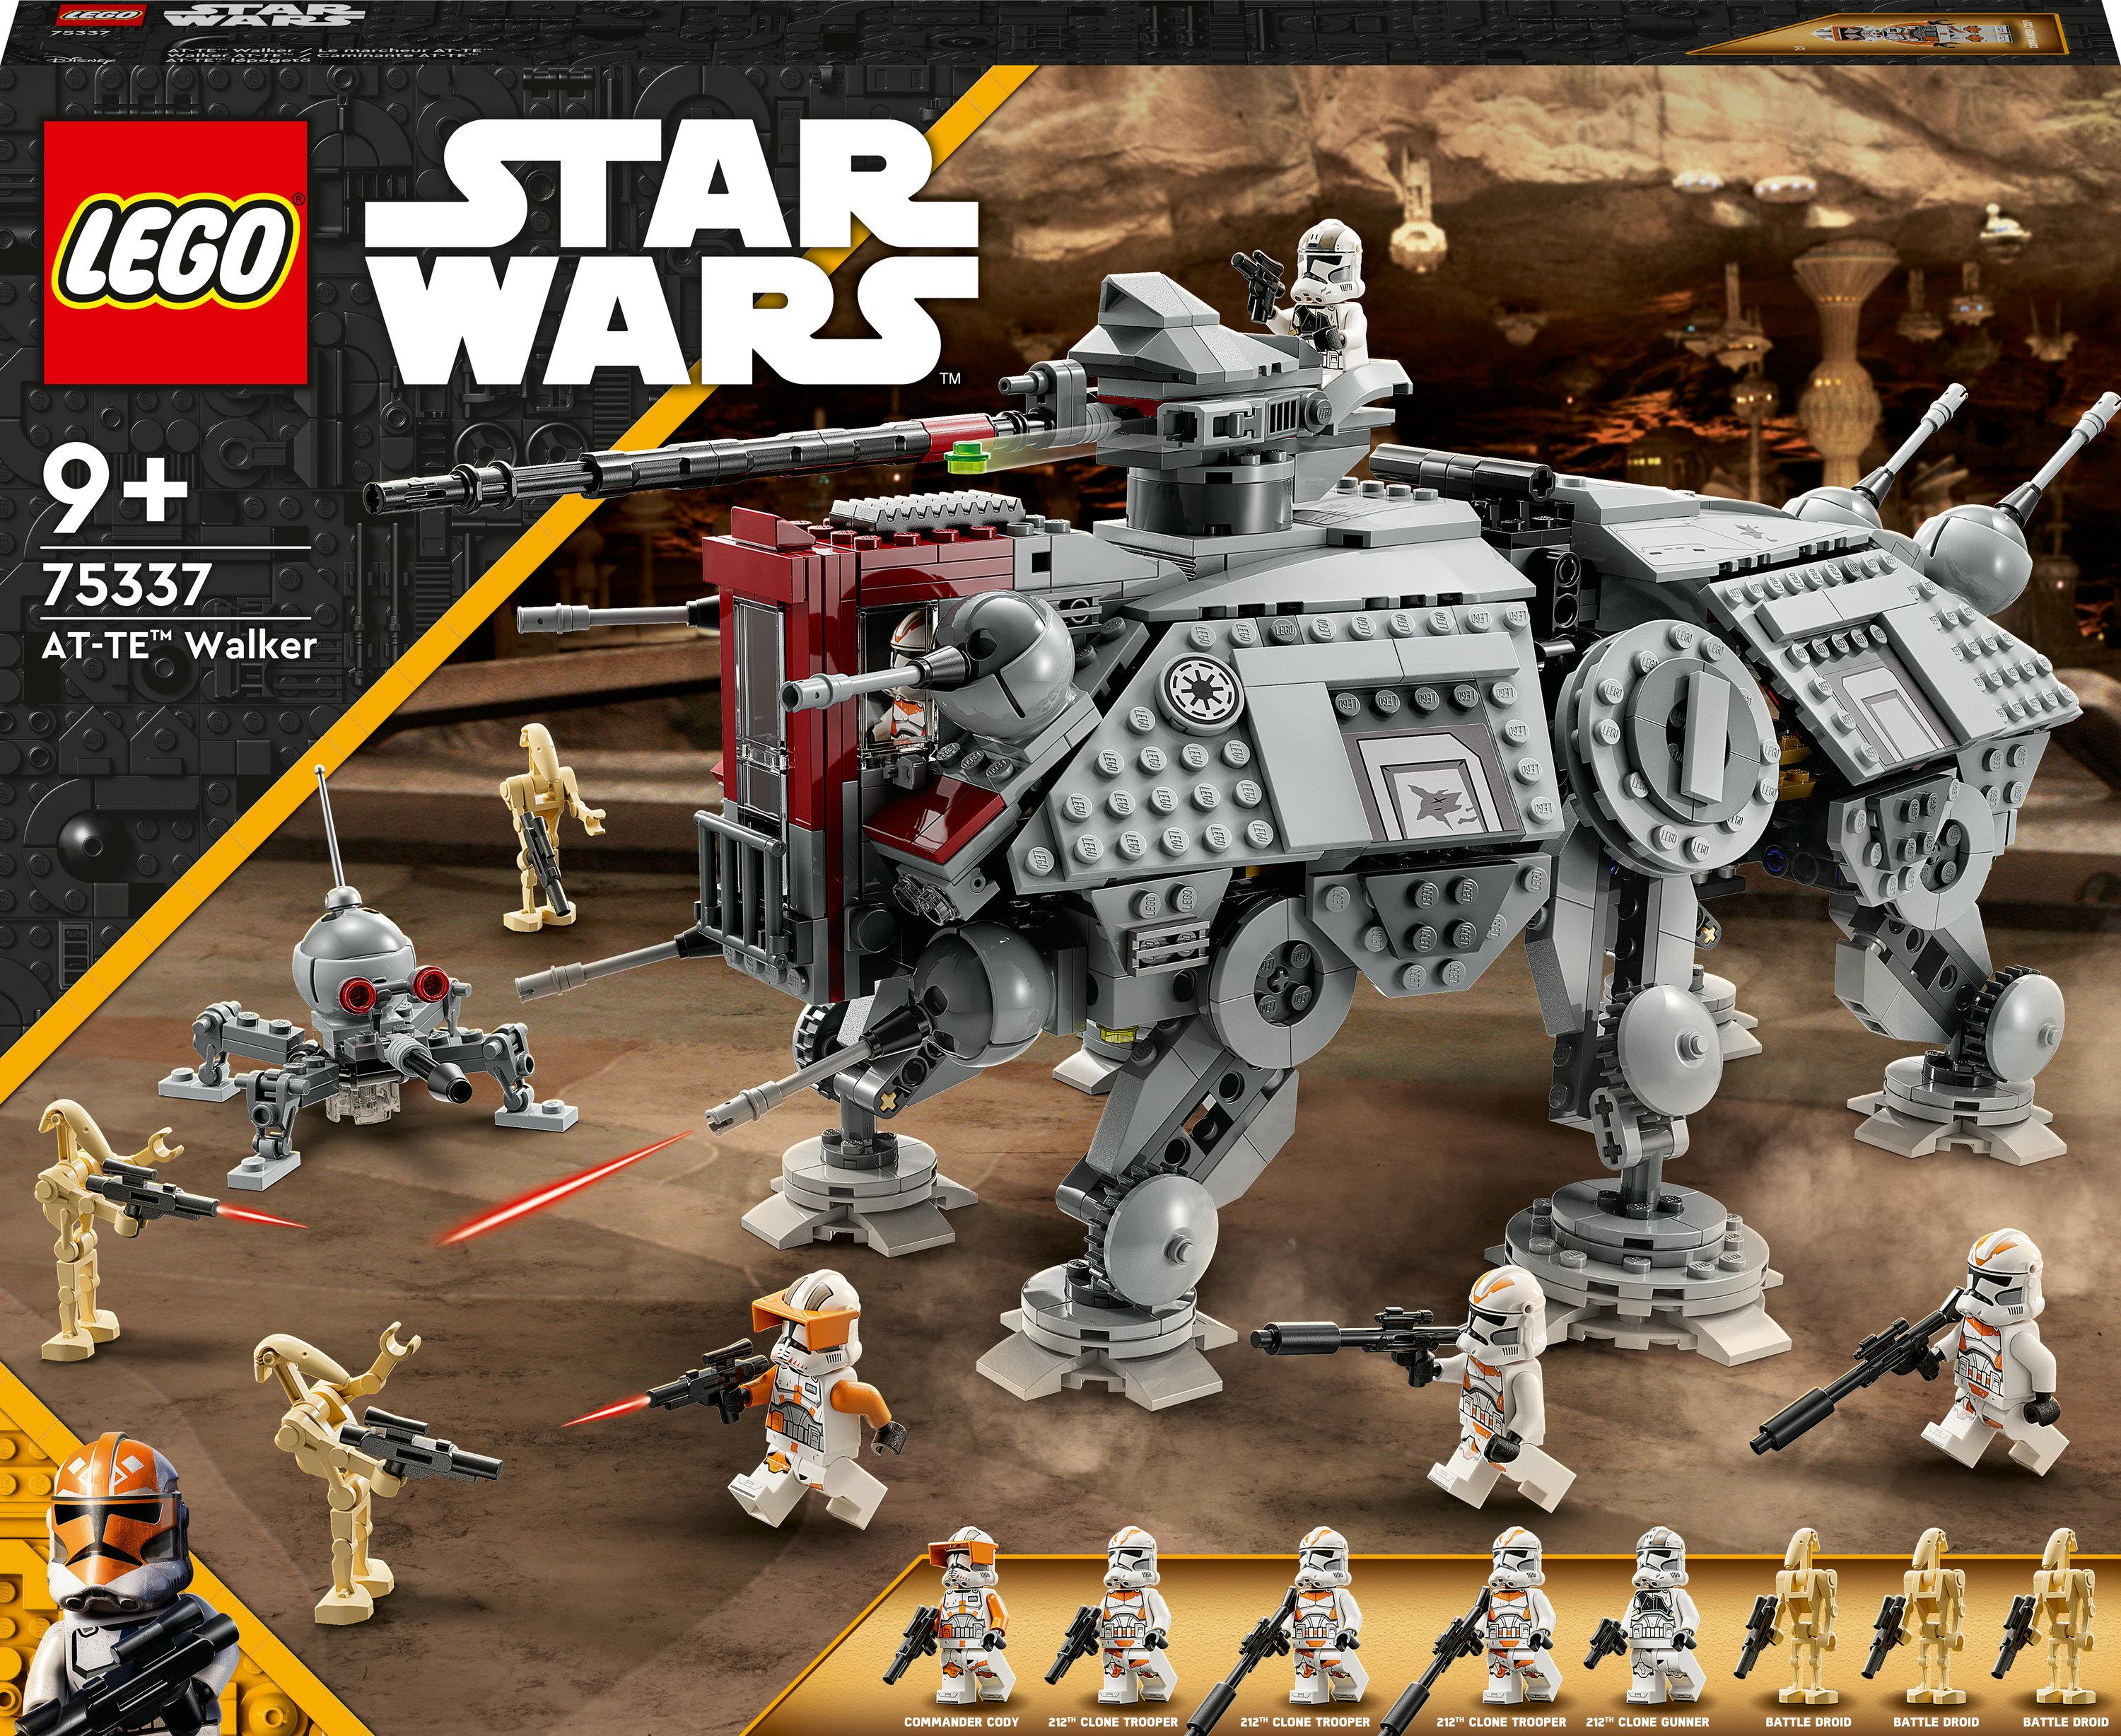 LEGO Star Wars 75337